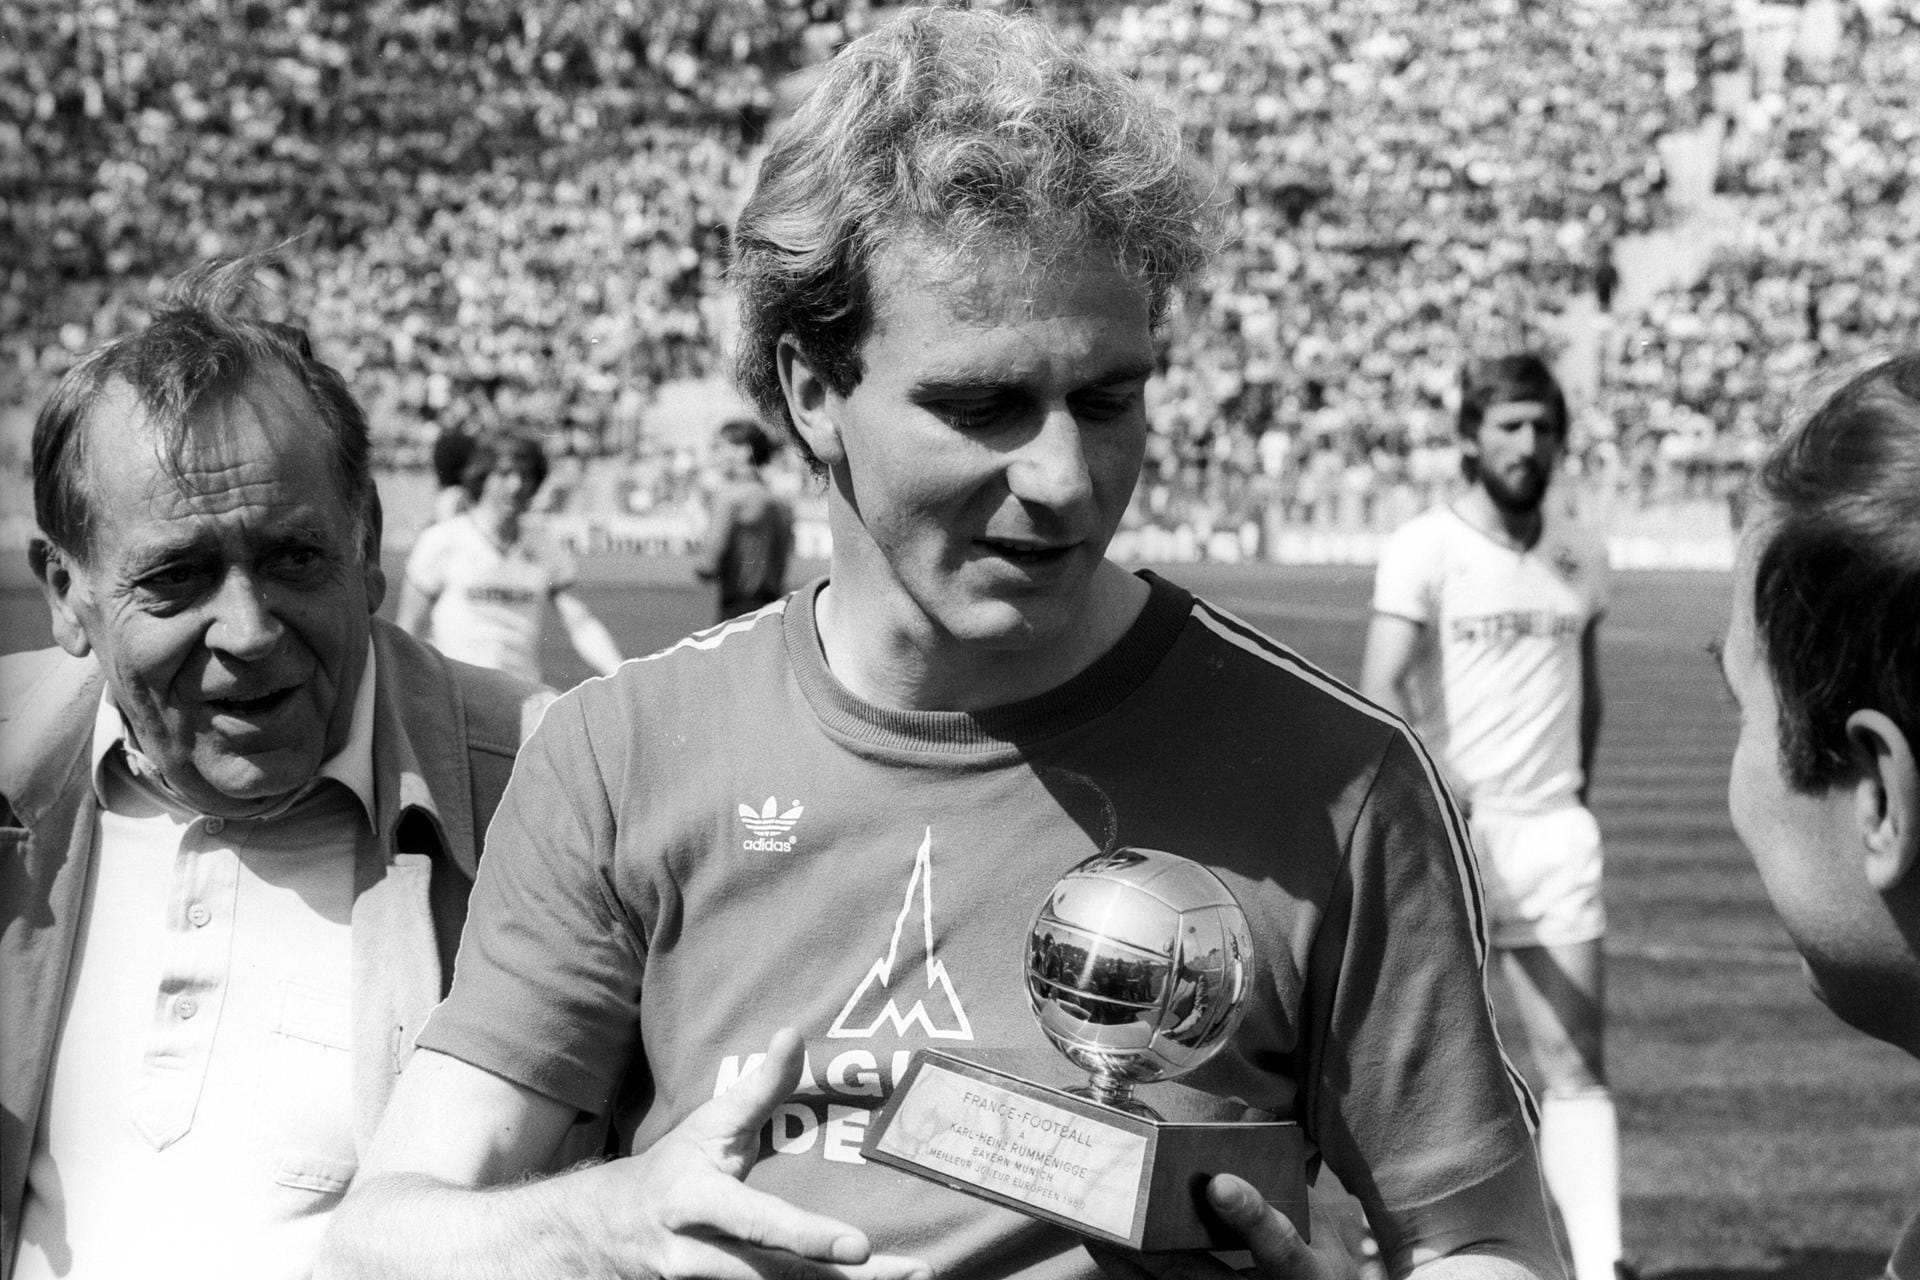 Karl-Heinz Rummenigge tat es Beckenbauer gleich, erhielt den Ballon d'Or als Europas Fußballer des Jahres sogar gleich zwei Mal hintereinander: 1980 sowie 1981.